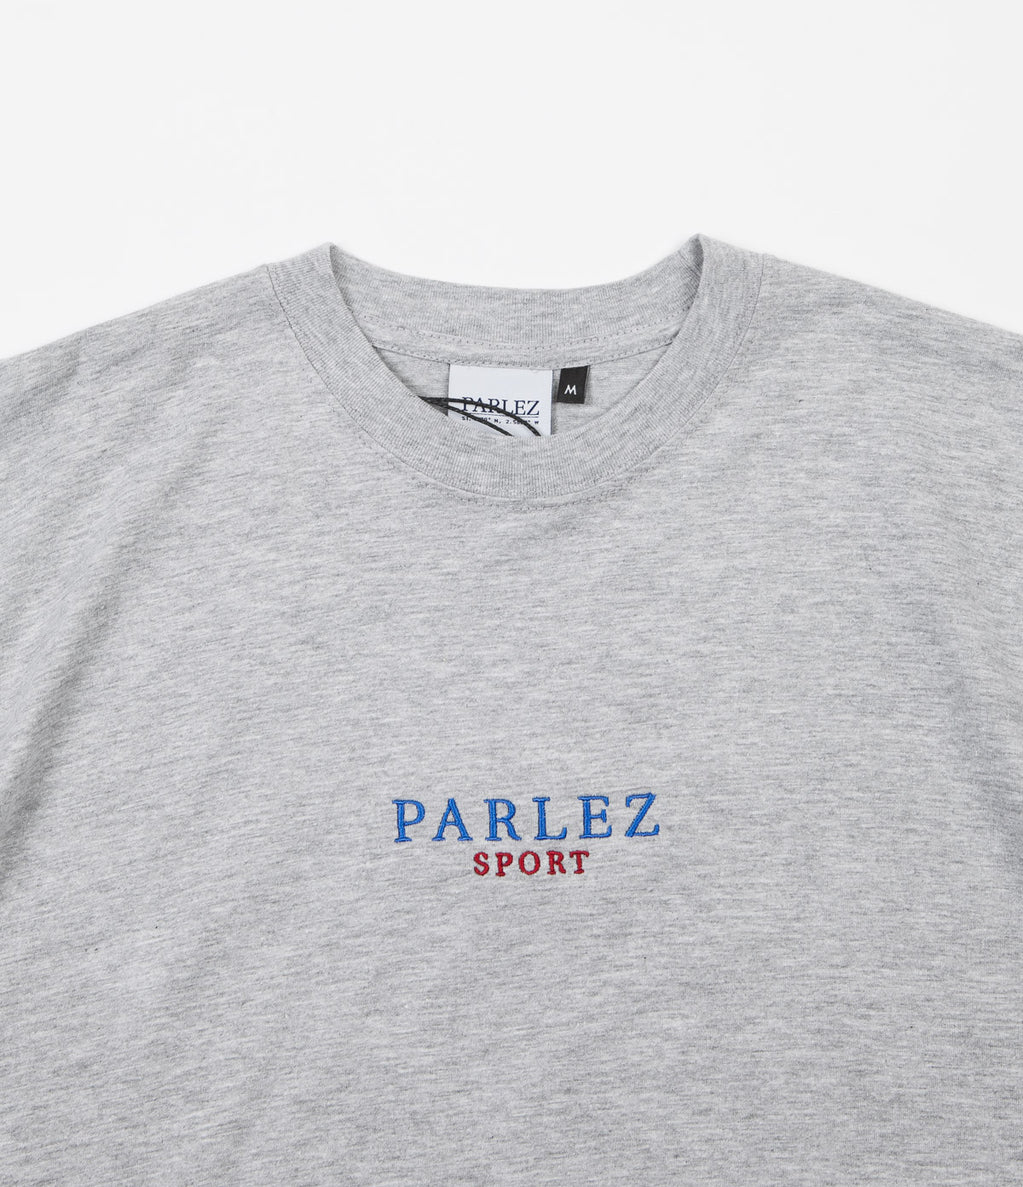 Parlez Sport T-Shirt - Heather Grey | Flatspot